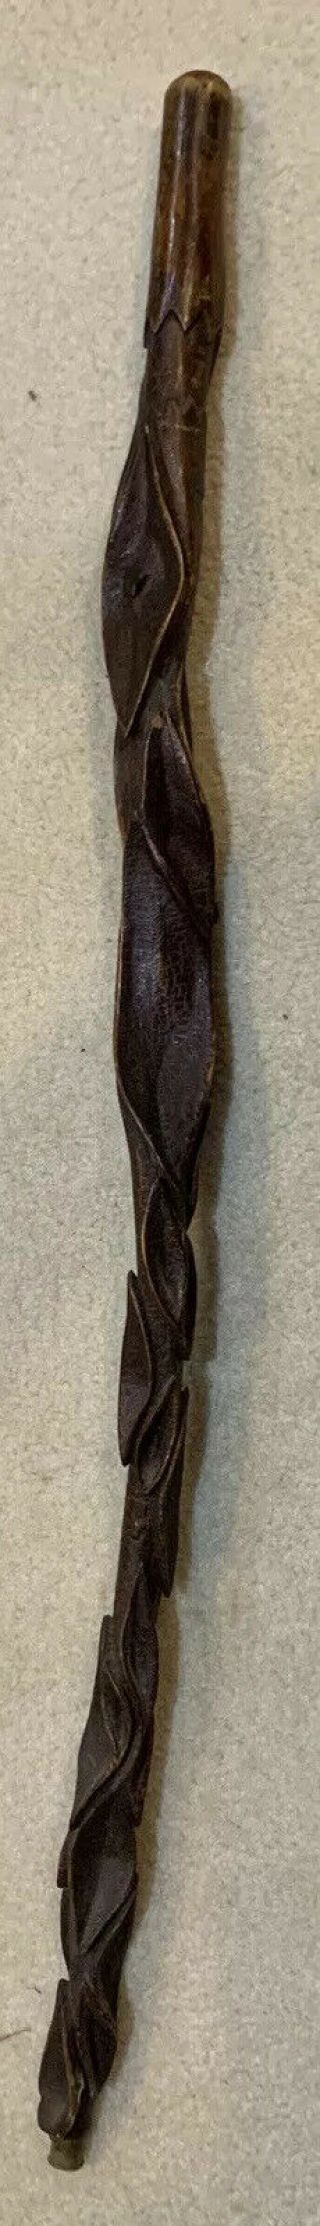 Antique Hand Carved Folk Art Figural Fish Leaves Walking Stick Cane